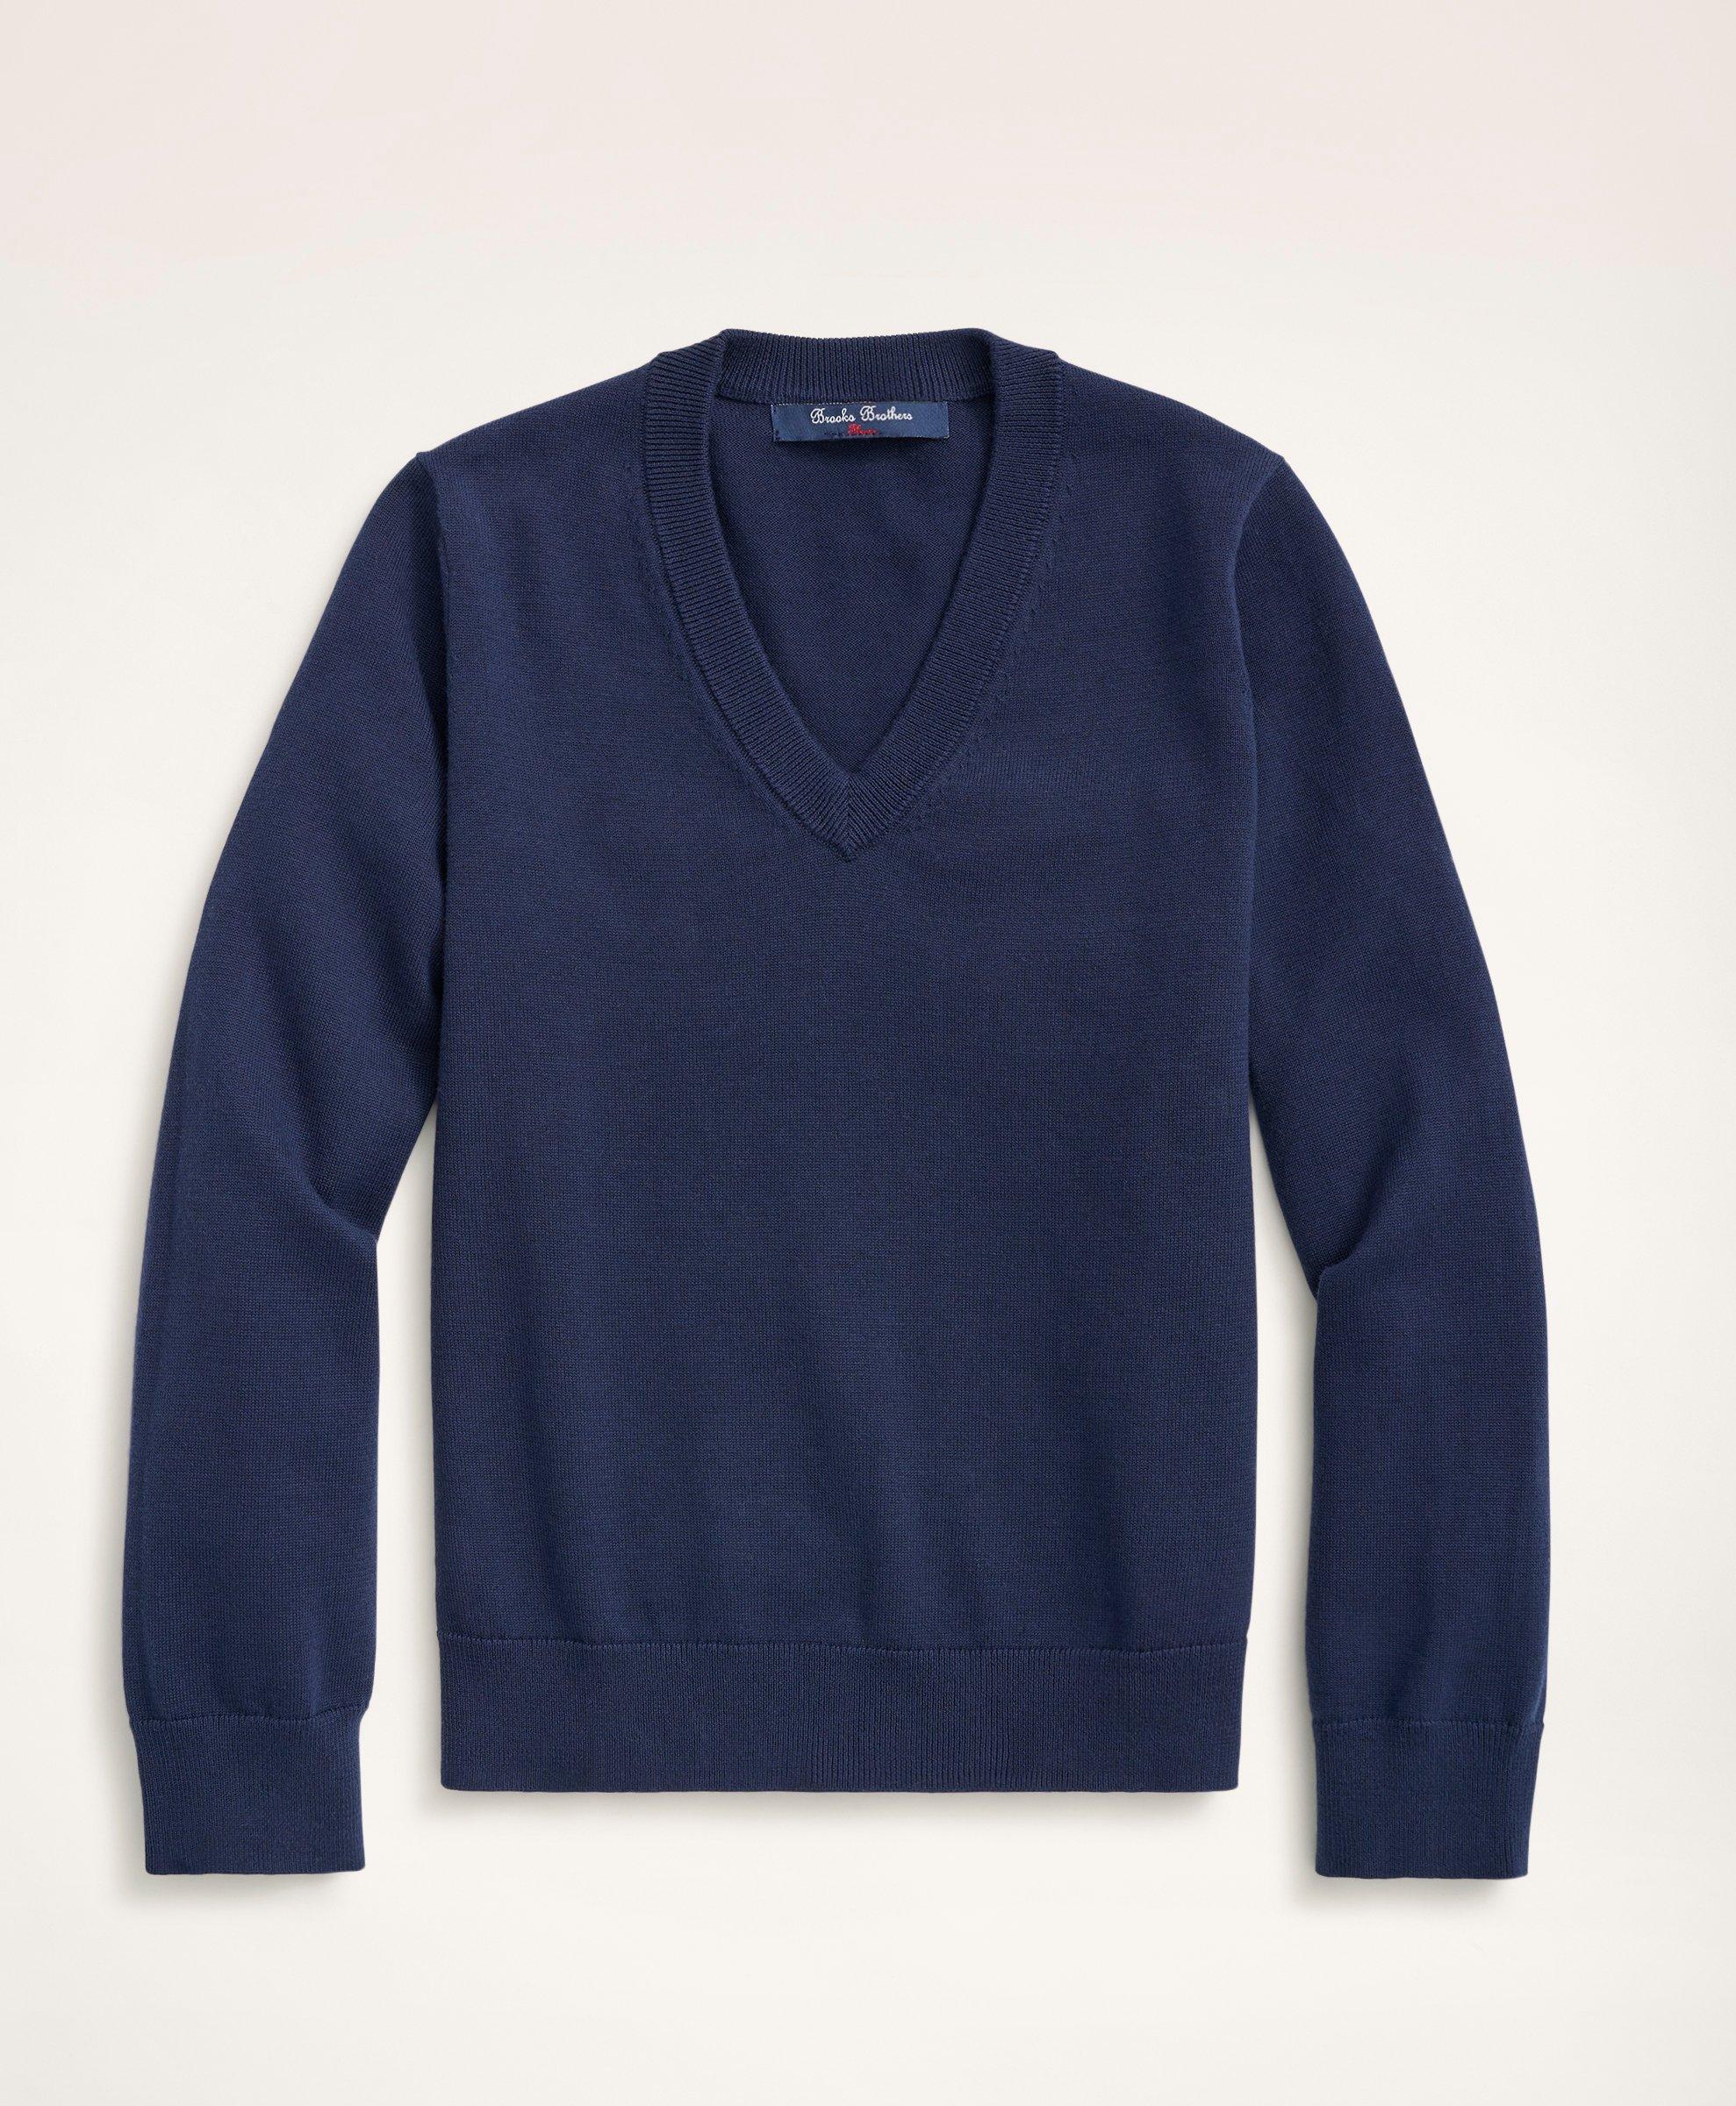 Brooks Brothers Kids'  Boys Cotton V-neck Sweater | Navy | Size Medium